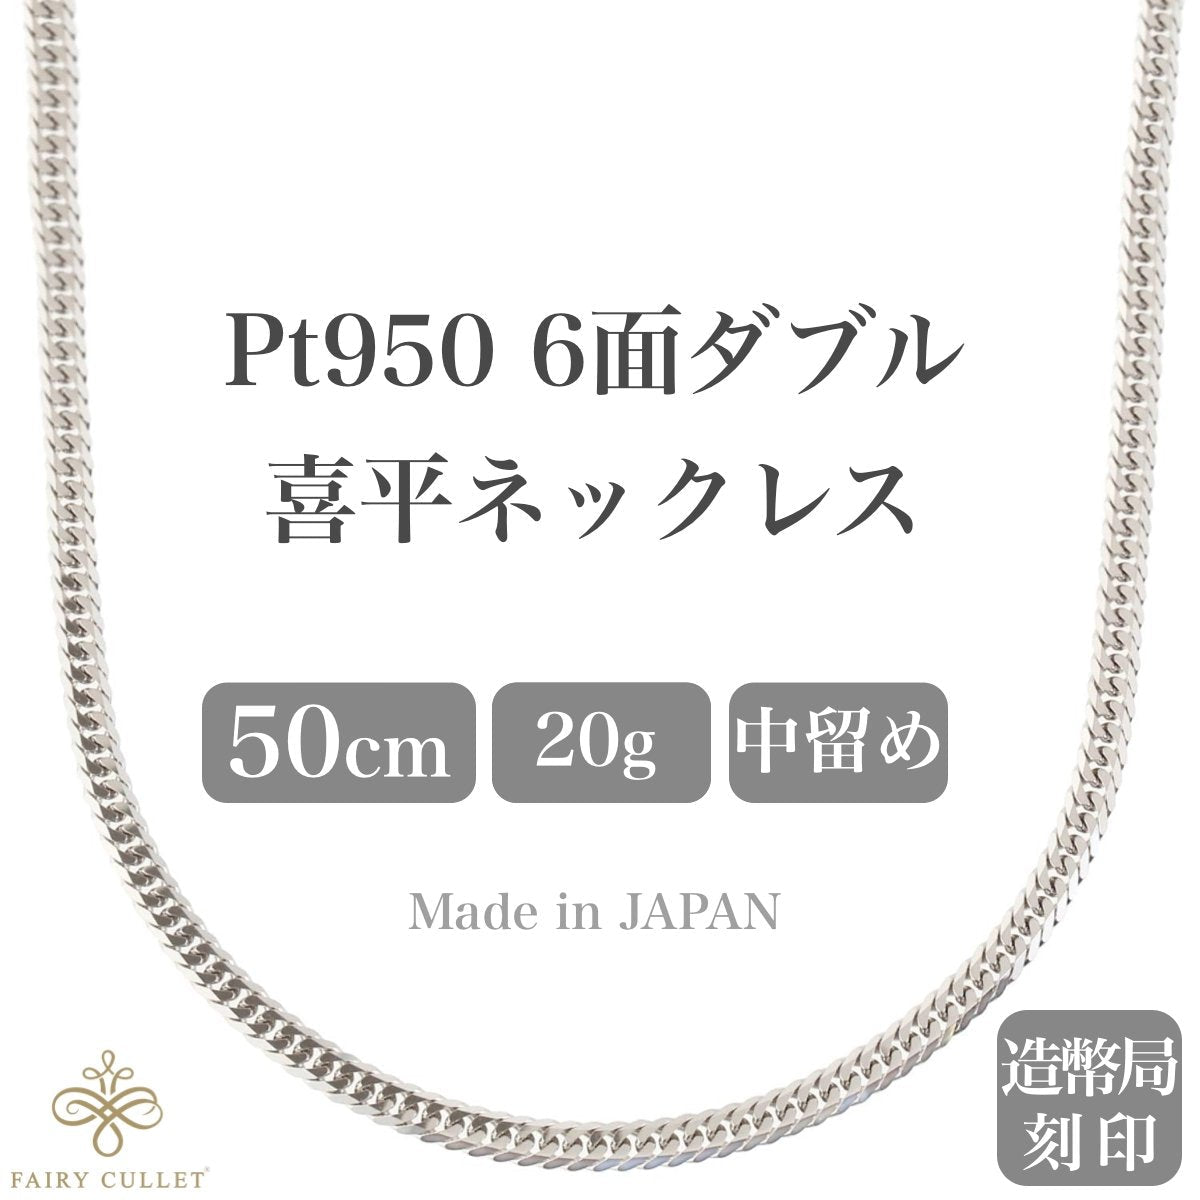 プラチナネックレス Pt950 6面W喜平チェーン 日本製 検定印 20g 50cm